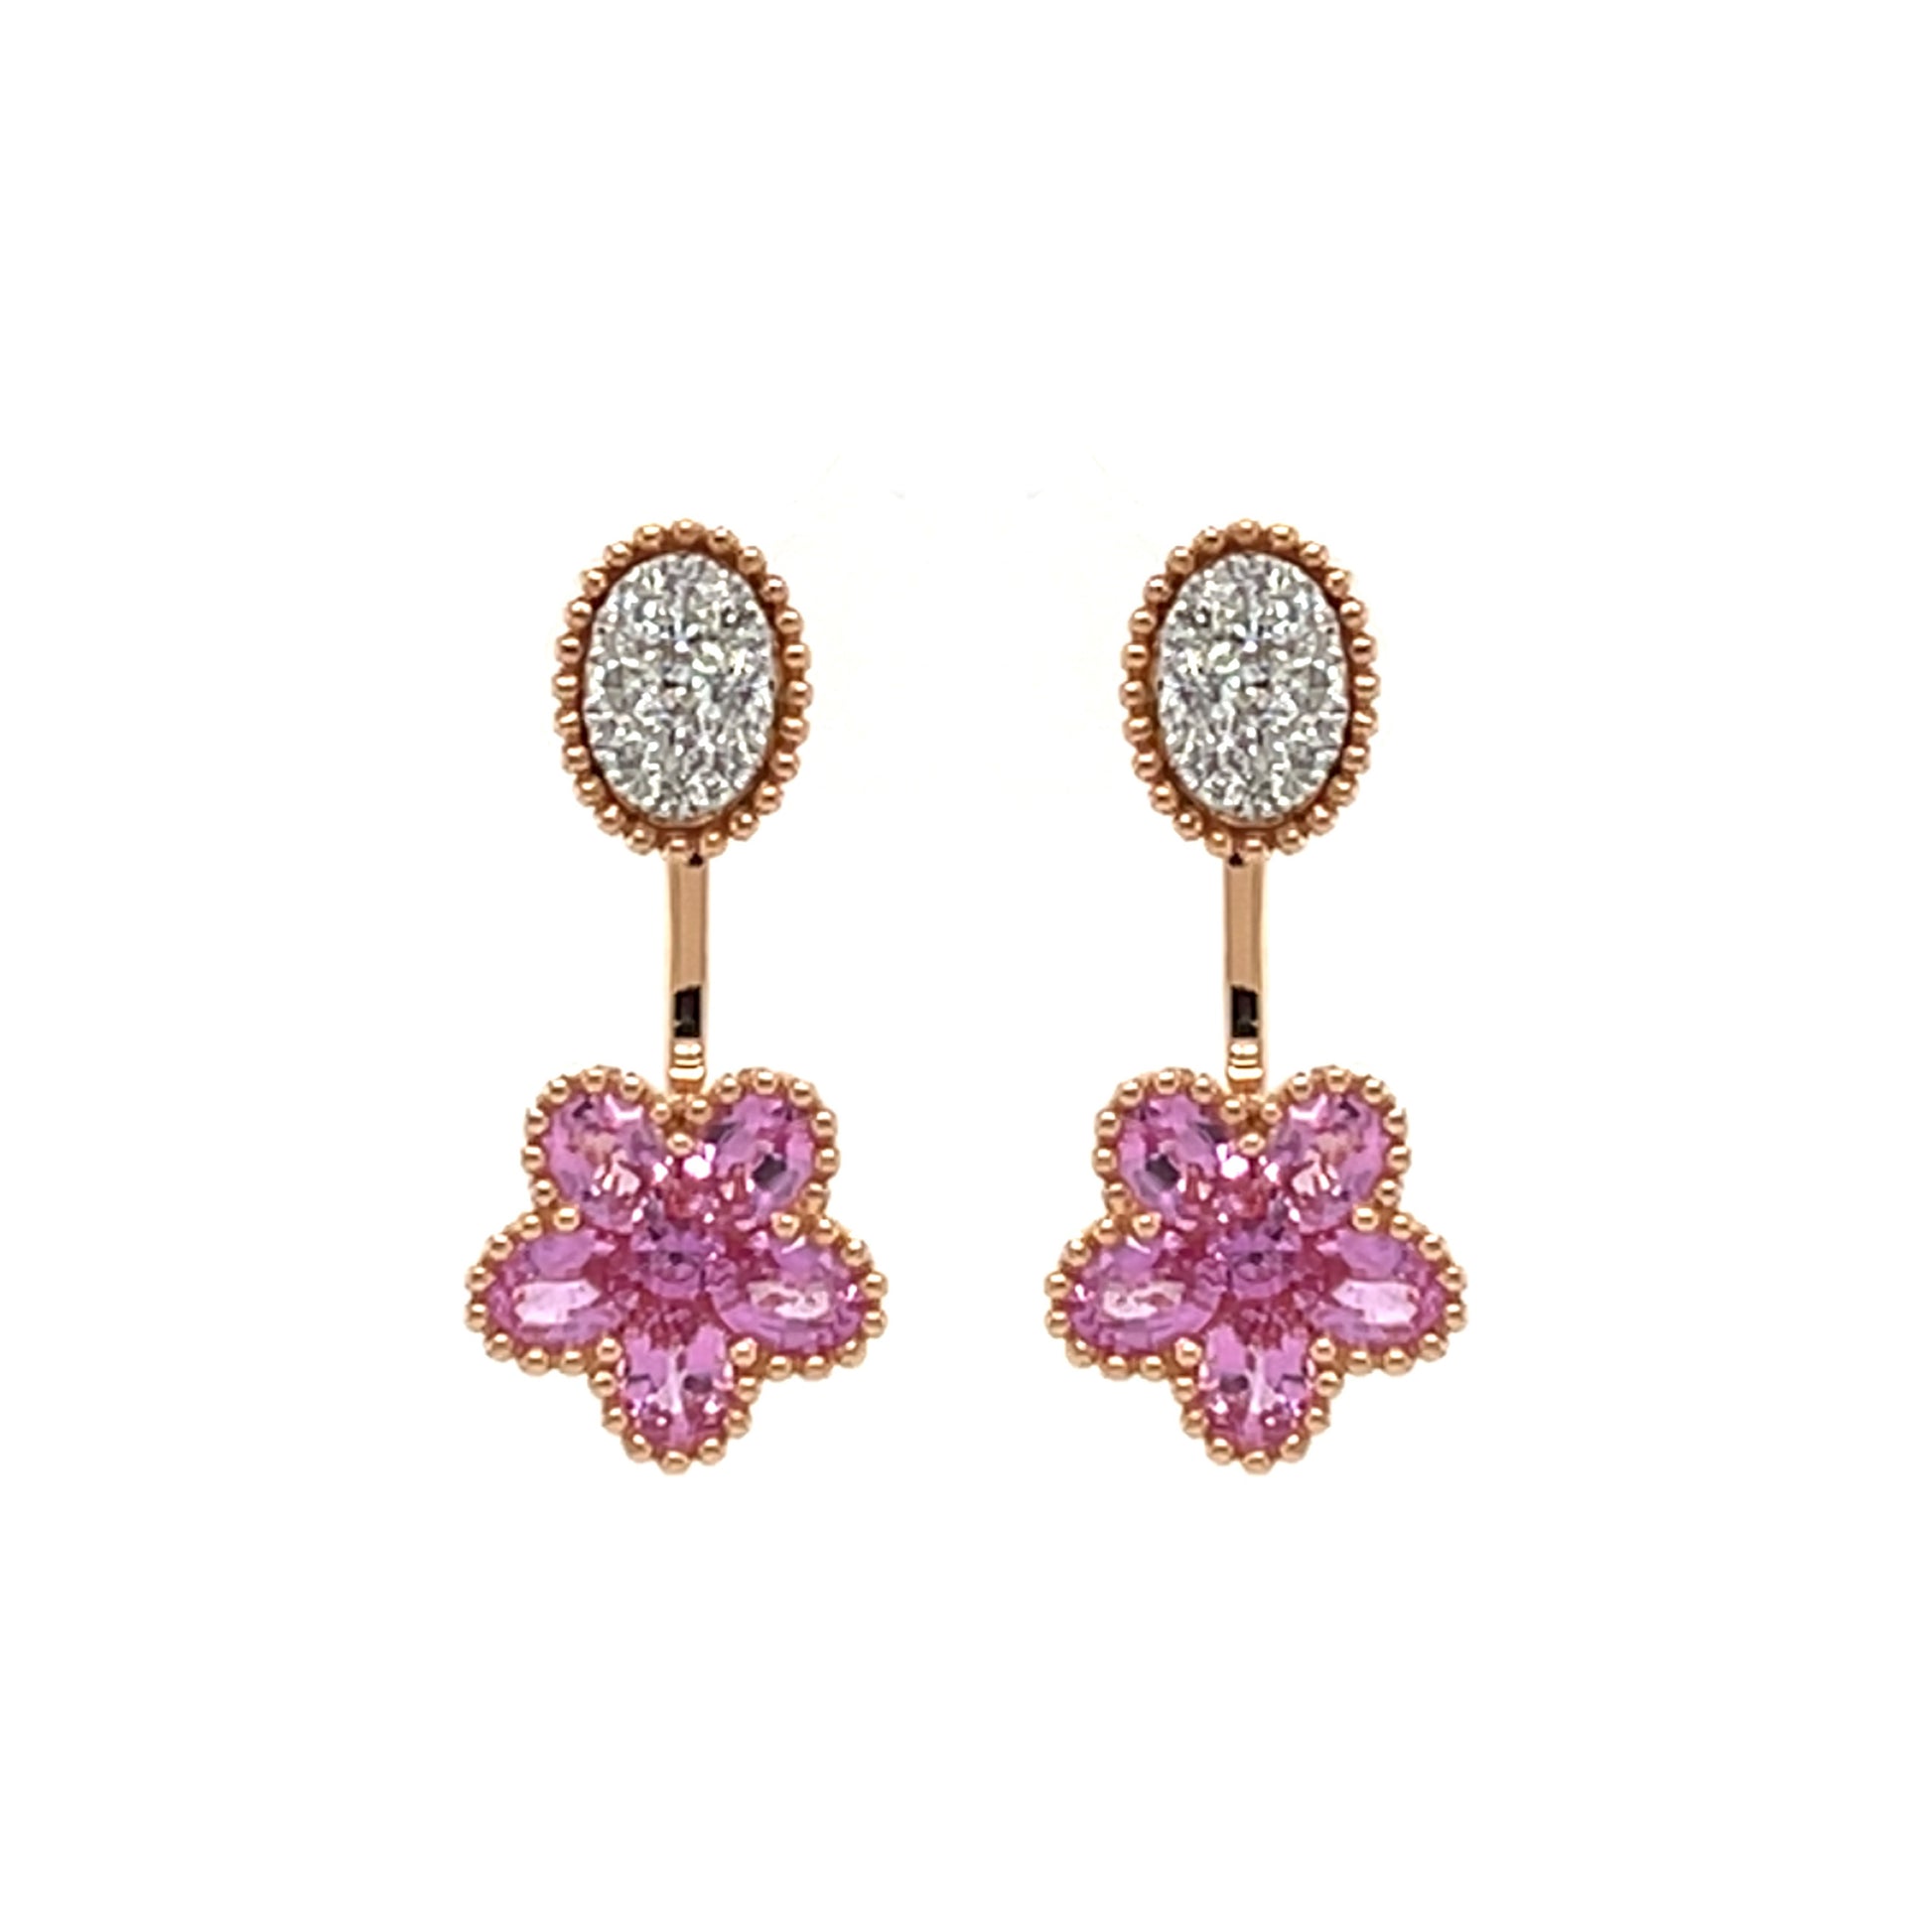 18K Diamond & Pink Sapphire Earrings - K.S. Sze & Sons